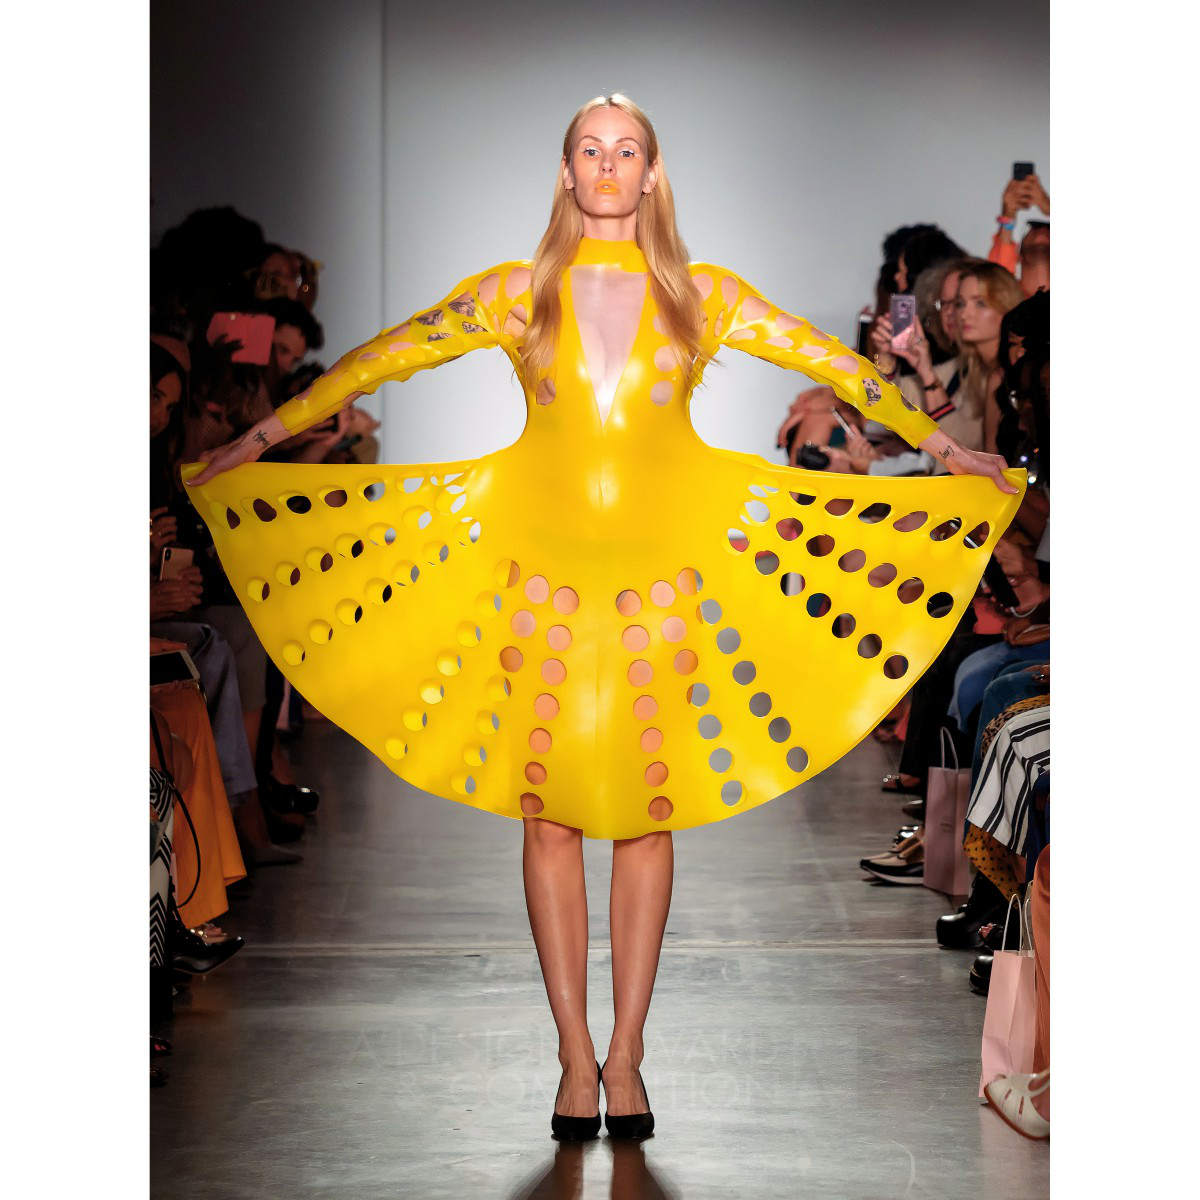 Splash Silicone Rubber Clothing: La Moda Futuristica di Viktoria Marchev